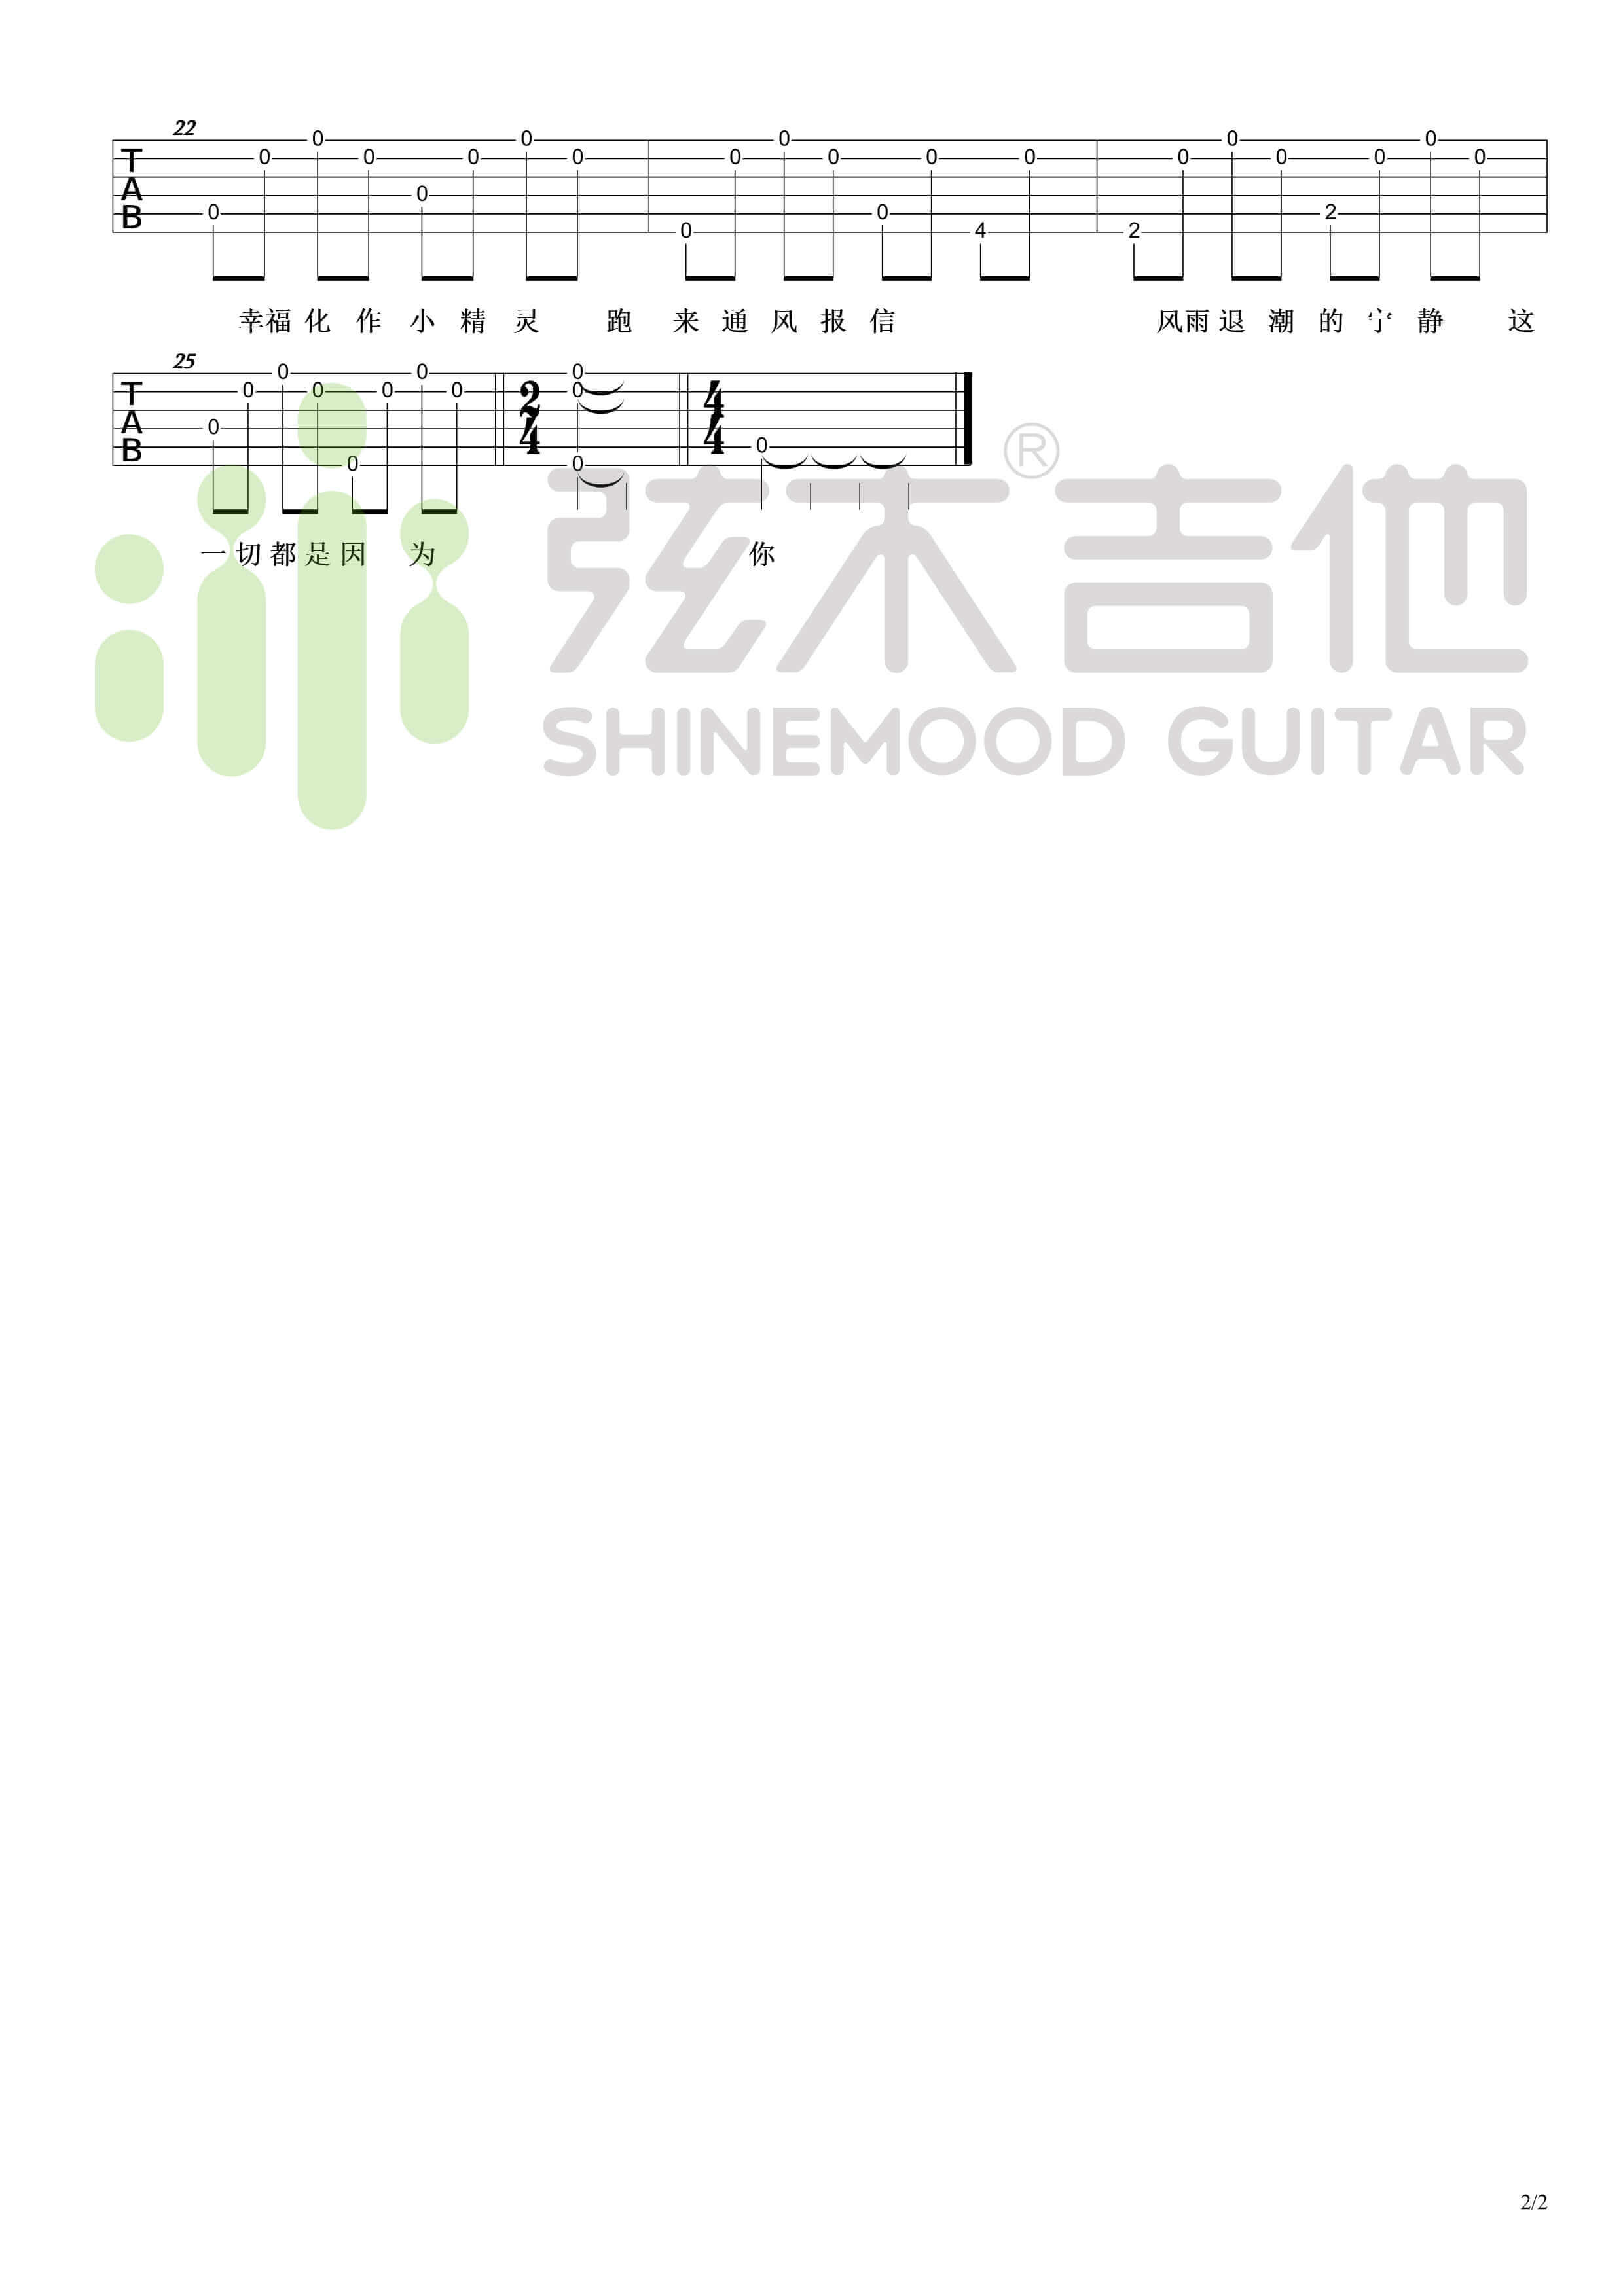 吉他源-吴青峰《小精灵》超简单单音吉他谱-弦木吉他插图2